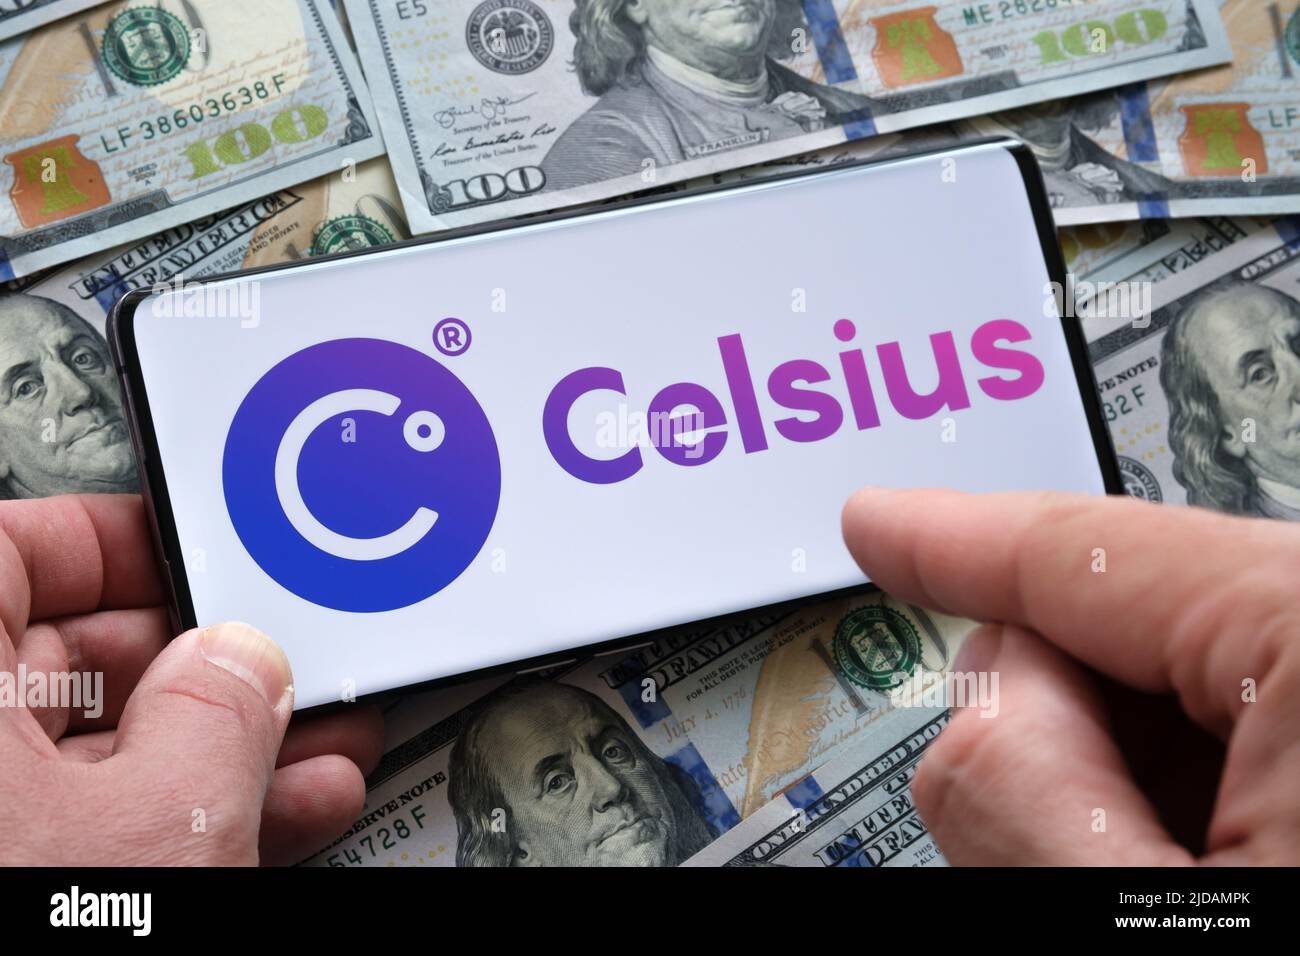 El logotipo de la empresa de cifrado Celsius se ve en el smartphone colocado en los billetes en dólares. Stafford, Reino Unido, 19 de julio de 2022 Foto de stock